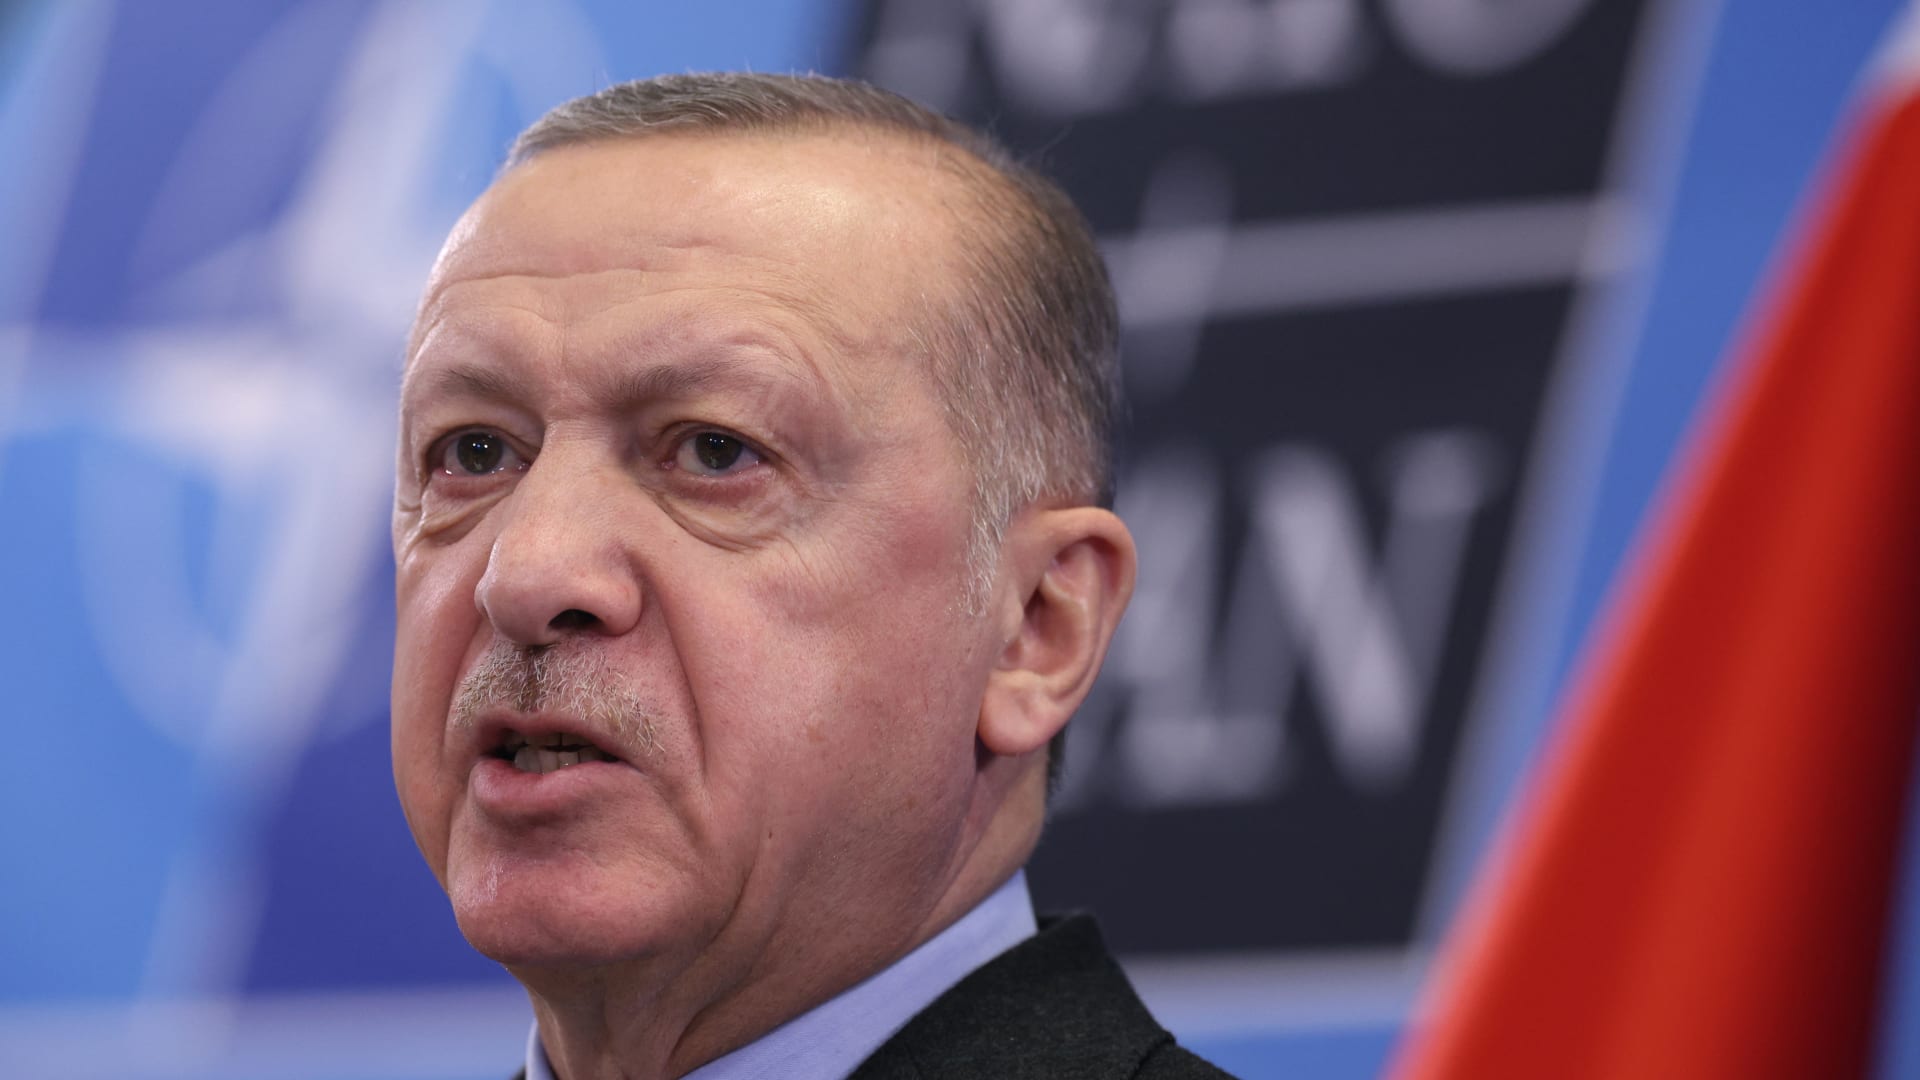  الرئيس التركي رجب طيب أردوغان